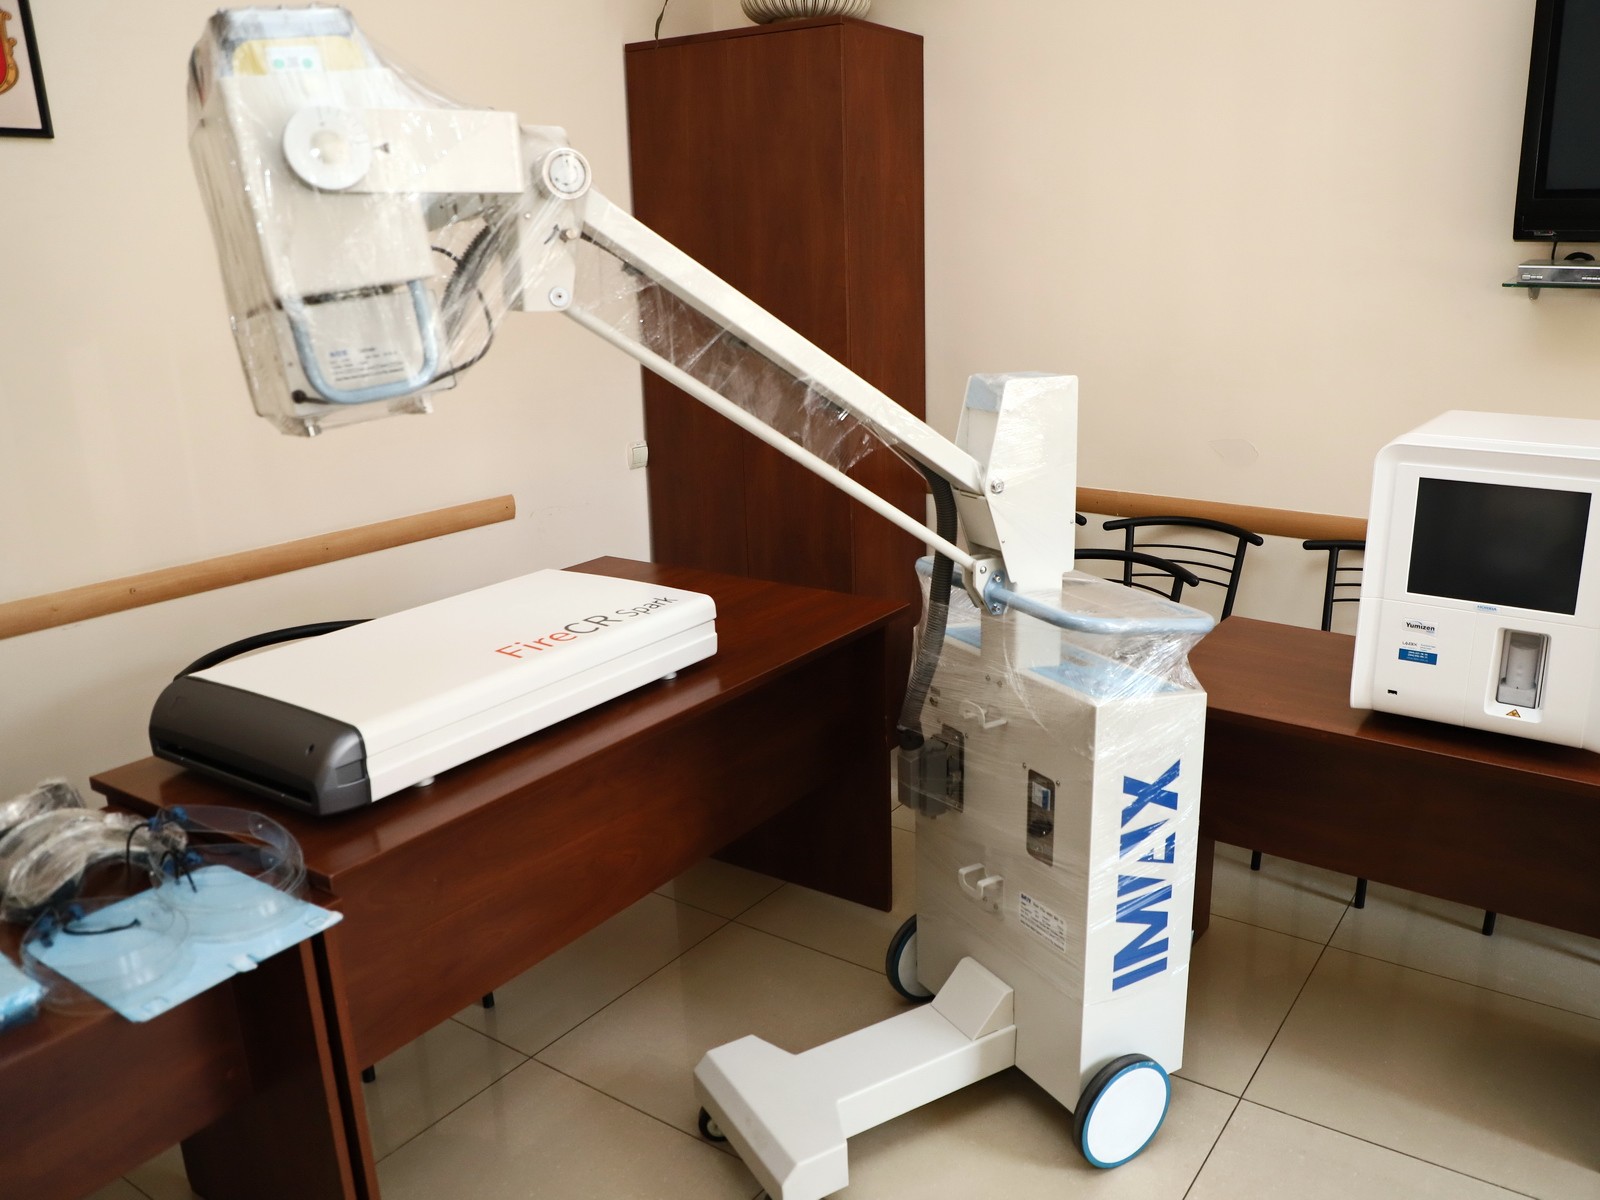 Мобильный рентгеновский кабинет будет работать в Ужгороде в течение следующих 2 недель – 16-27 мая.